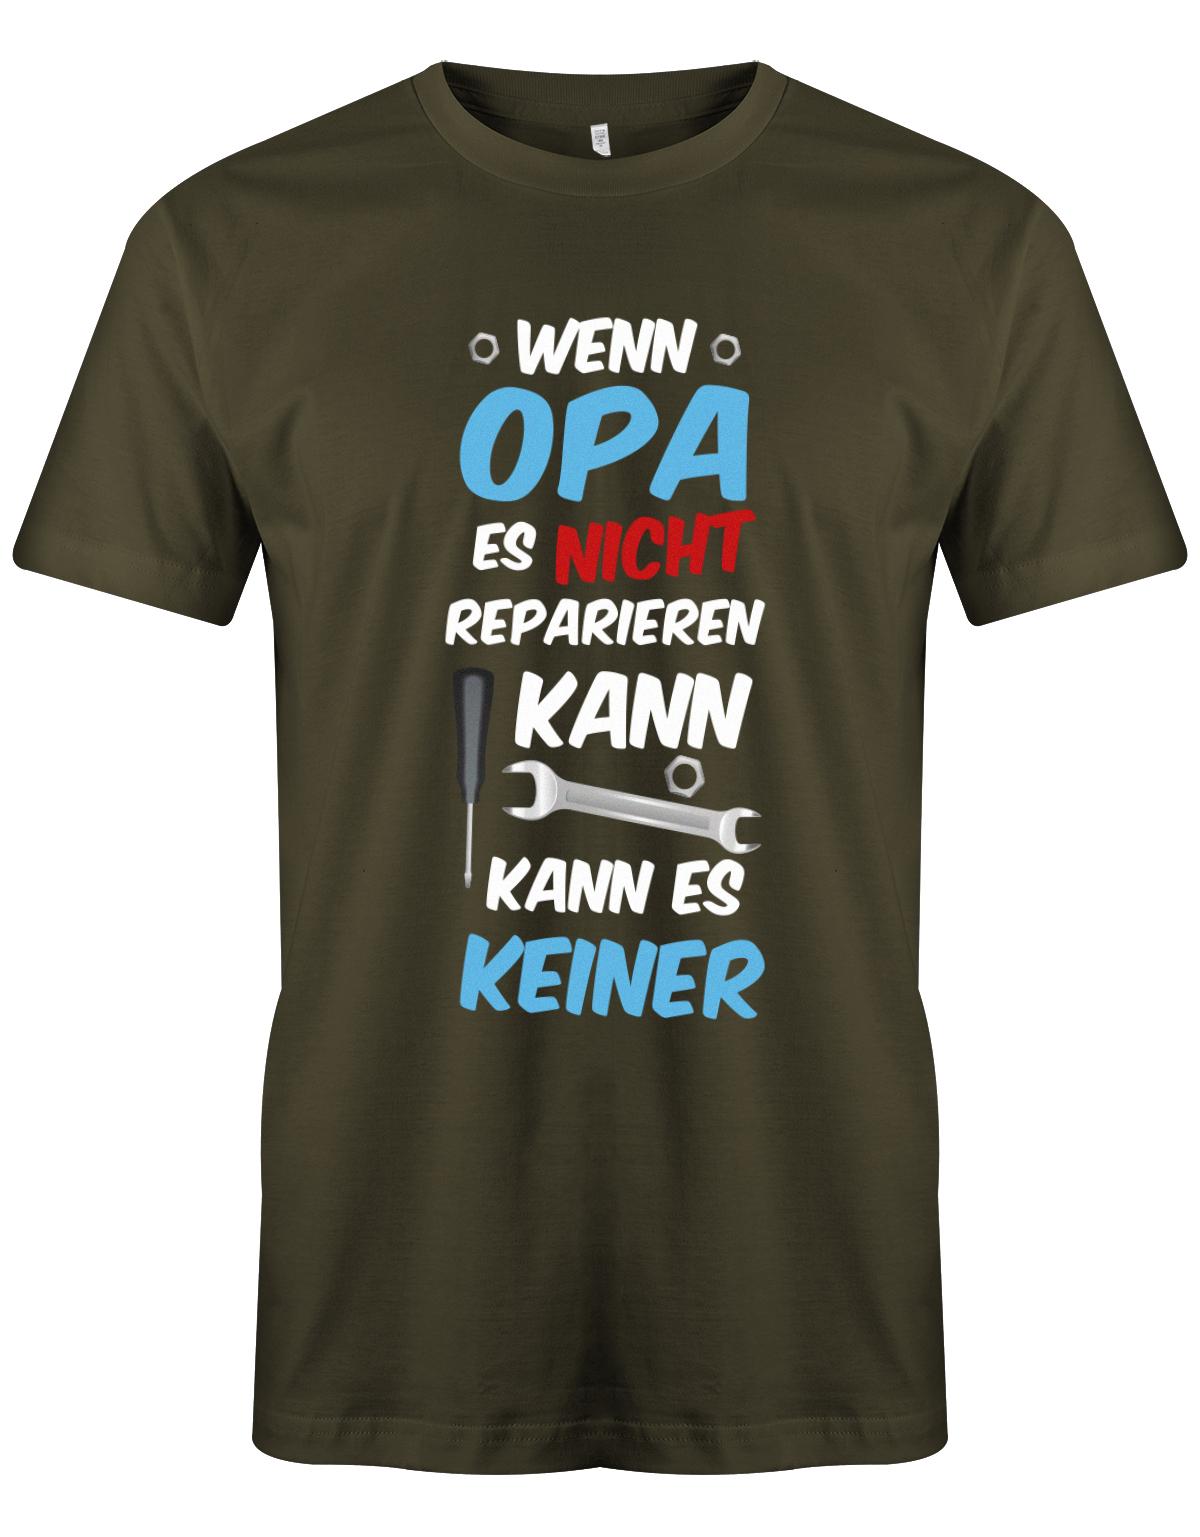 Opa T-Shirt – Wenn Opa es nicht reparieren kann, kann es keiner. Army